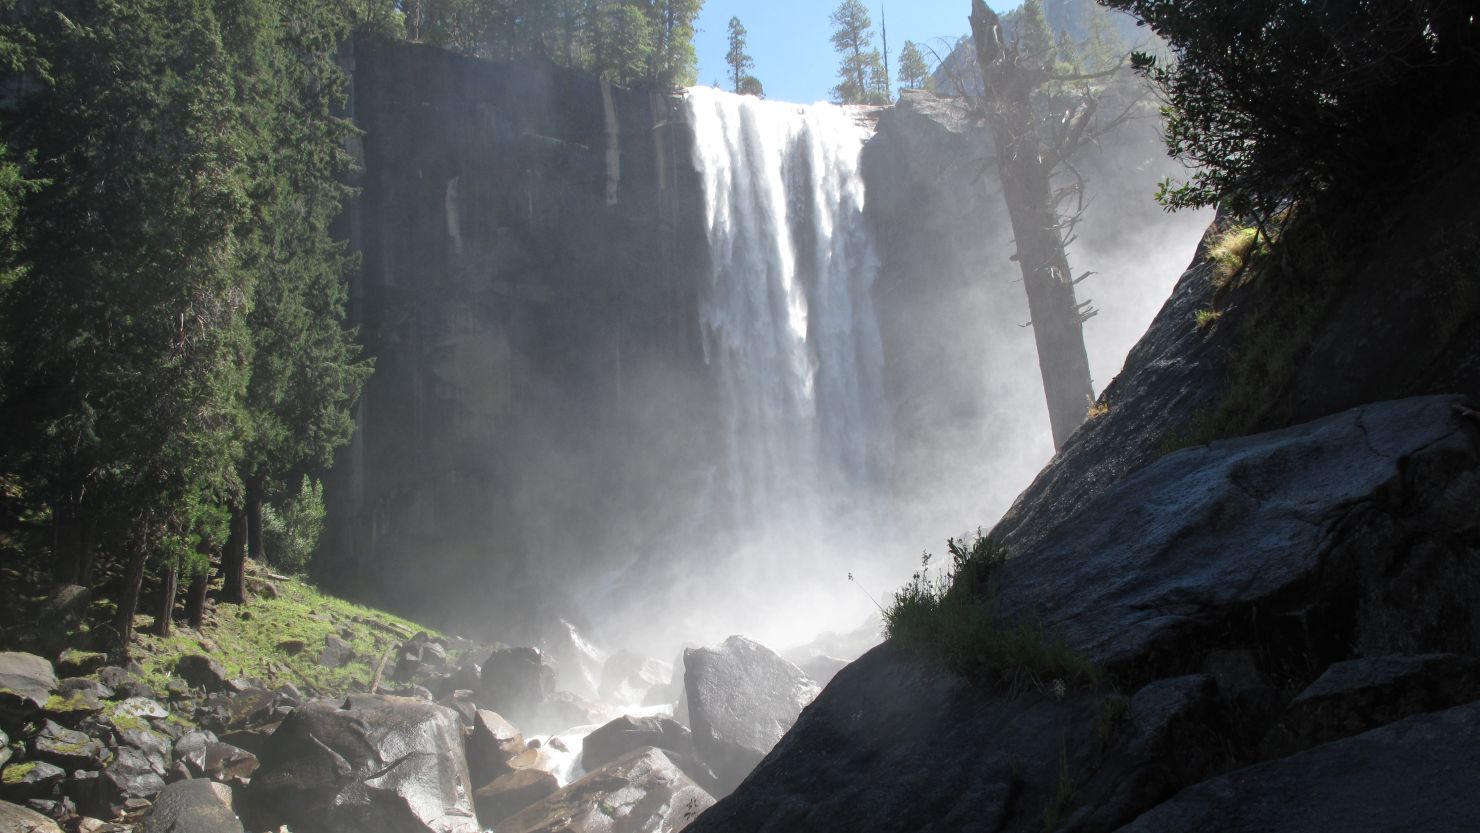 Vernal Fall in Yosemite National Park.